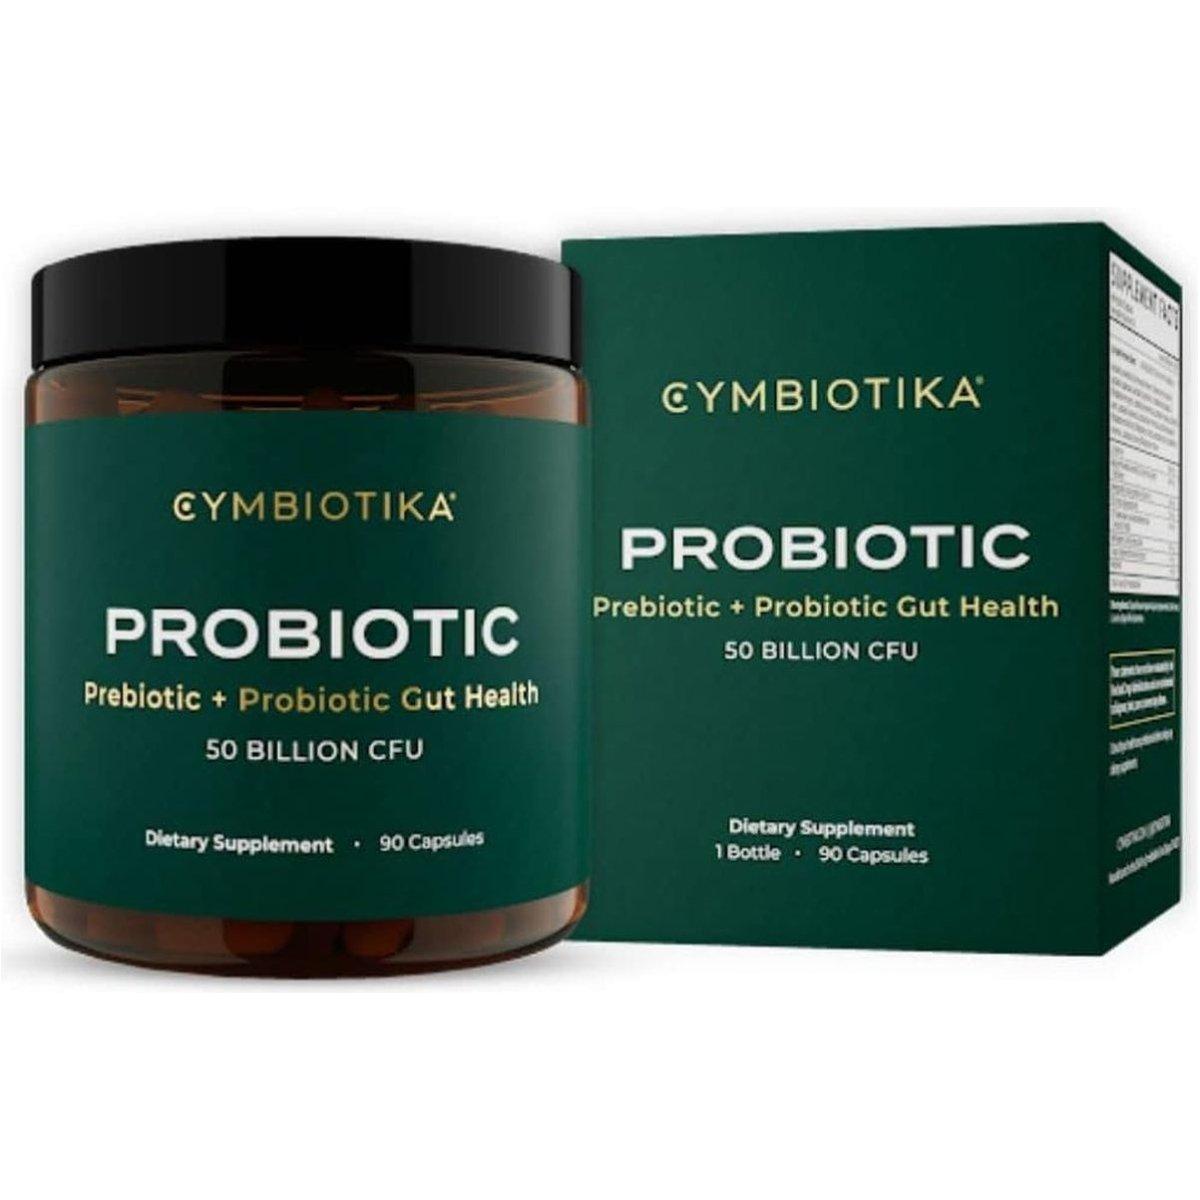 Cymbiotika Probiotic + Prebiotic - 50 Billion CFU, 90 Capsules - Glam Global UK